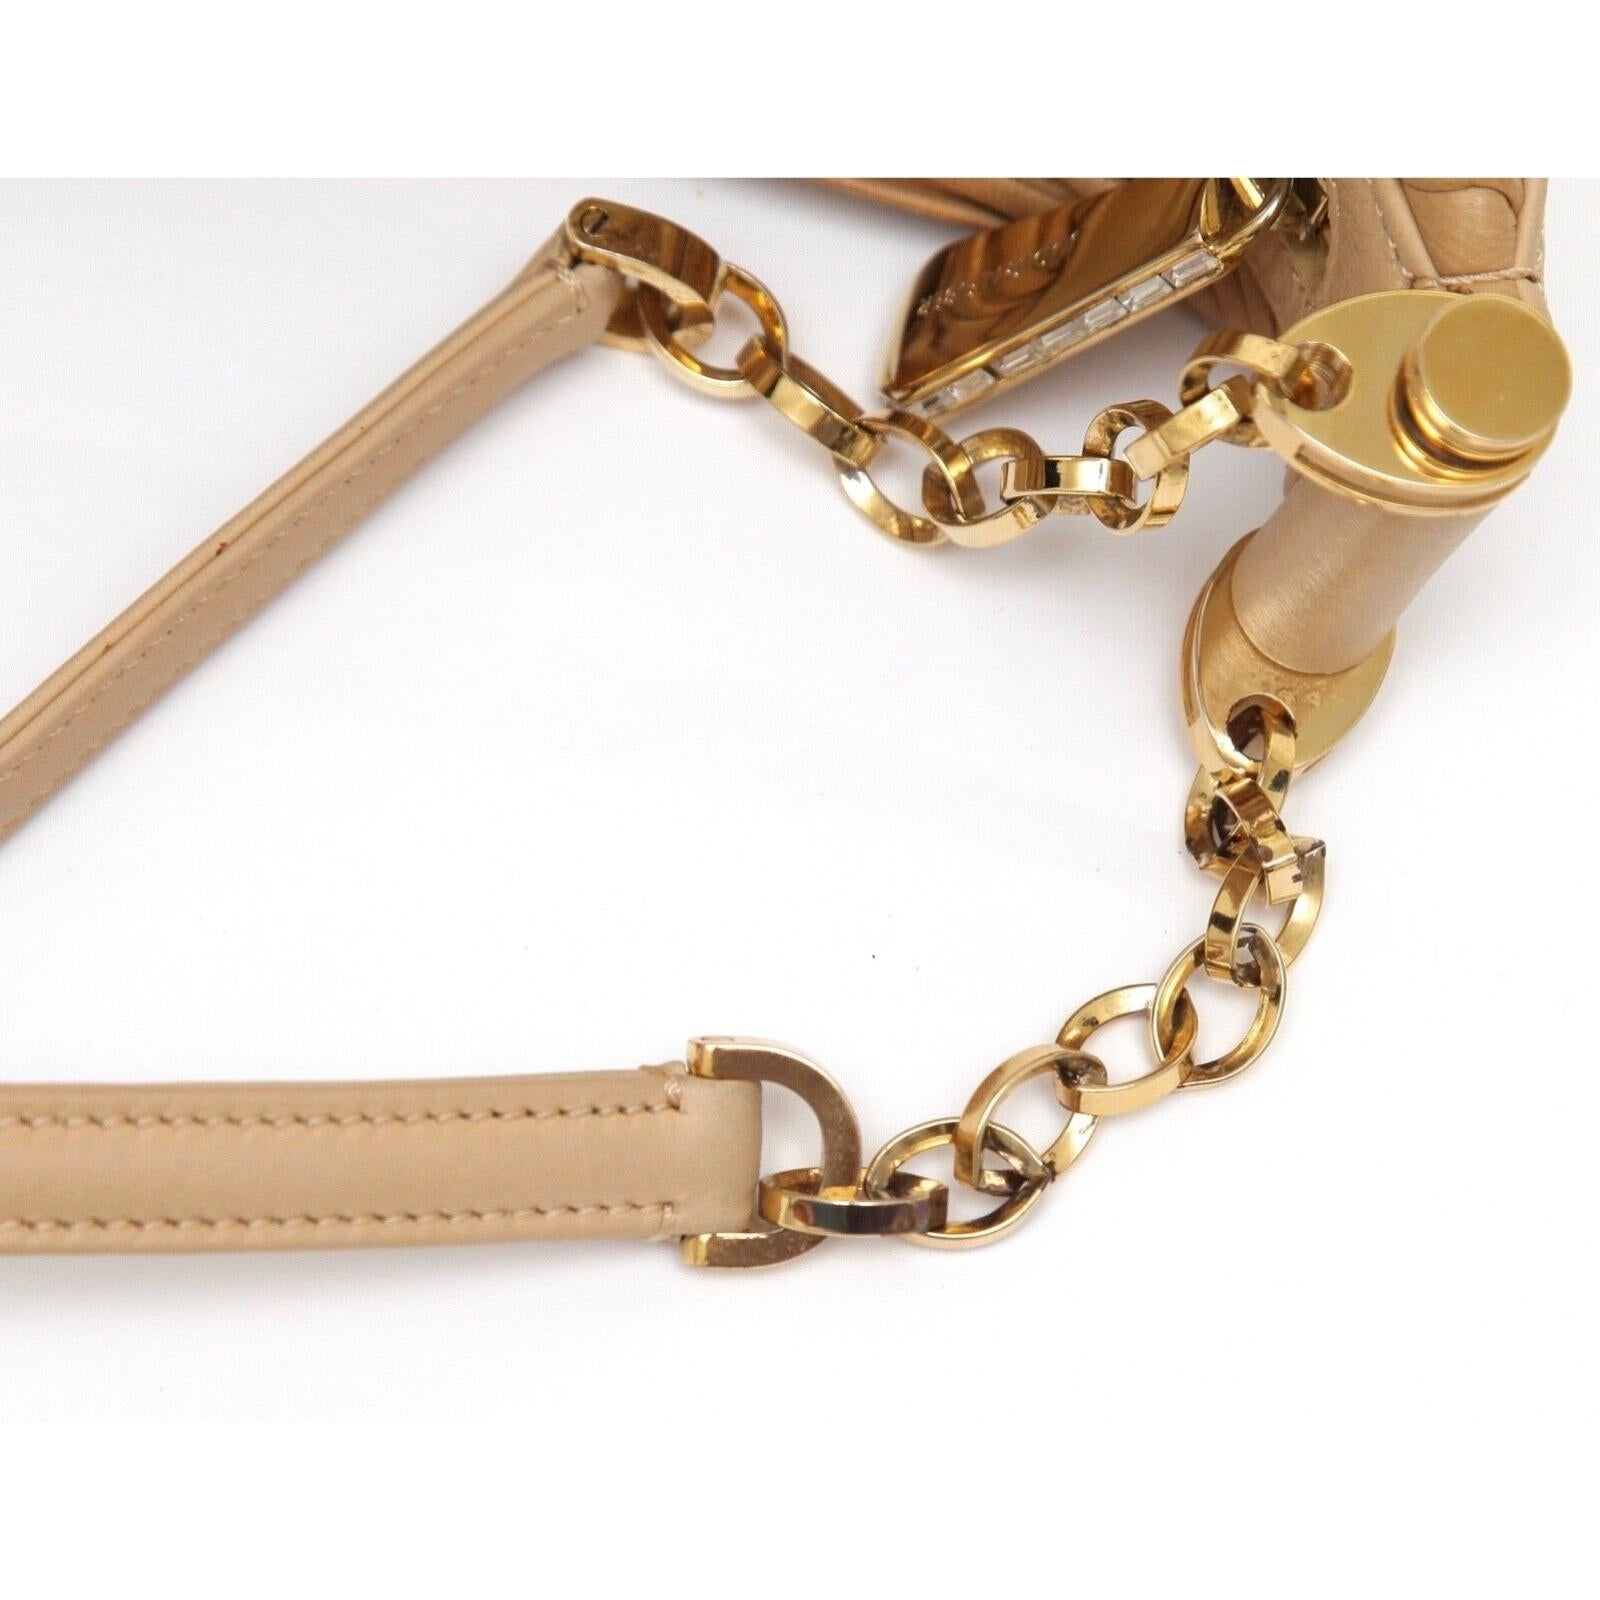 JUDITH LEIBER Leather Shoulder Bag Hobo Beige Gold-Tone HW Crystal Top Zipper For Sale 5